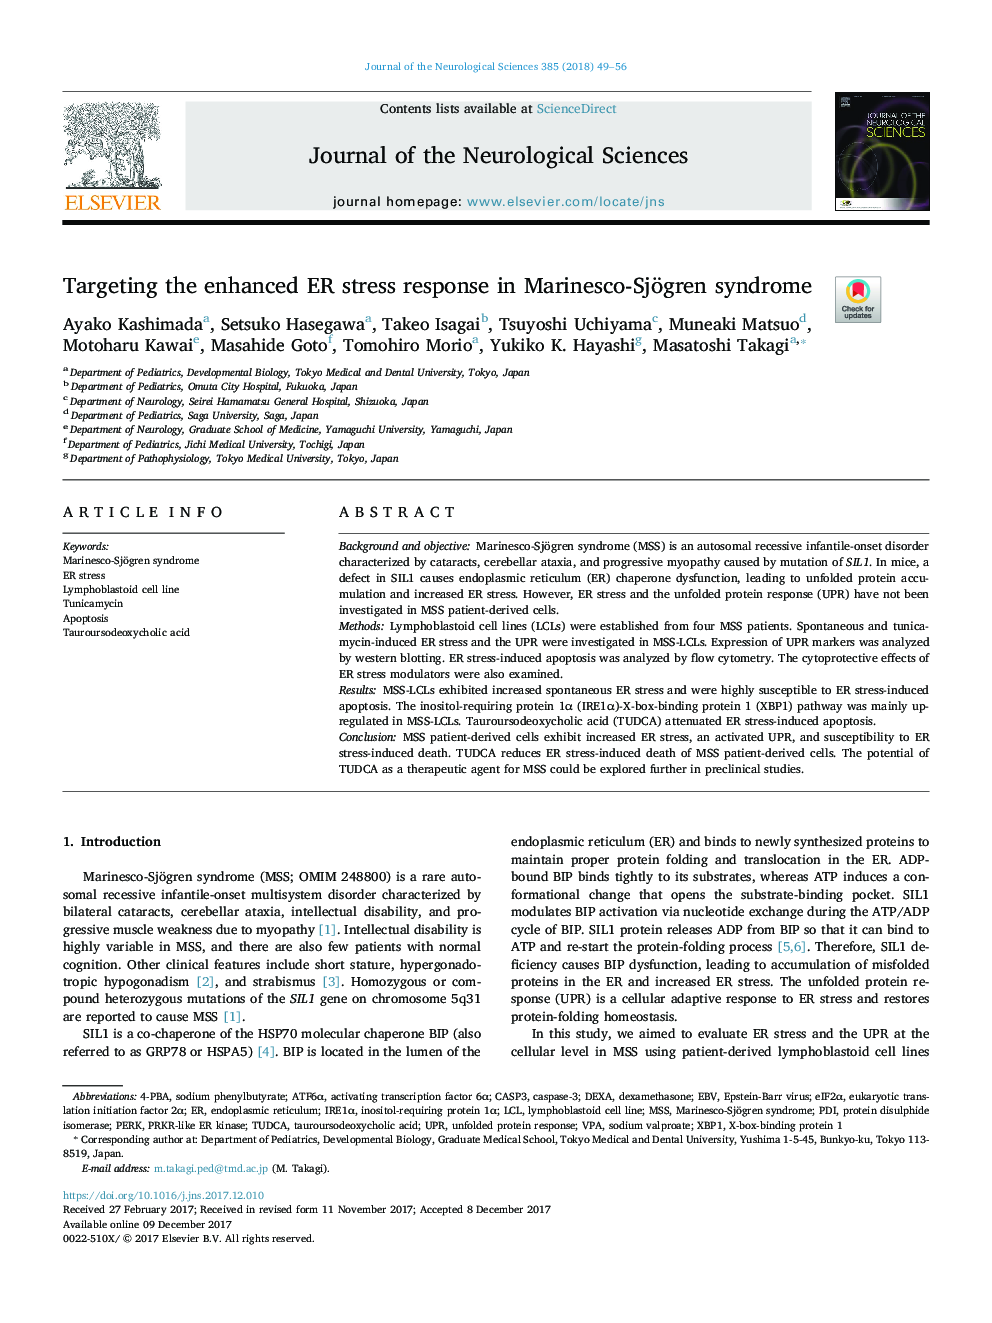 Targeting the enhanced ER stress response in Marinesco-Sjögren syndrome